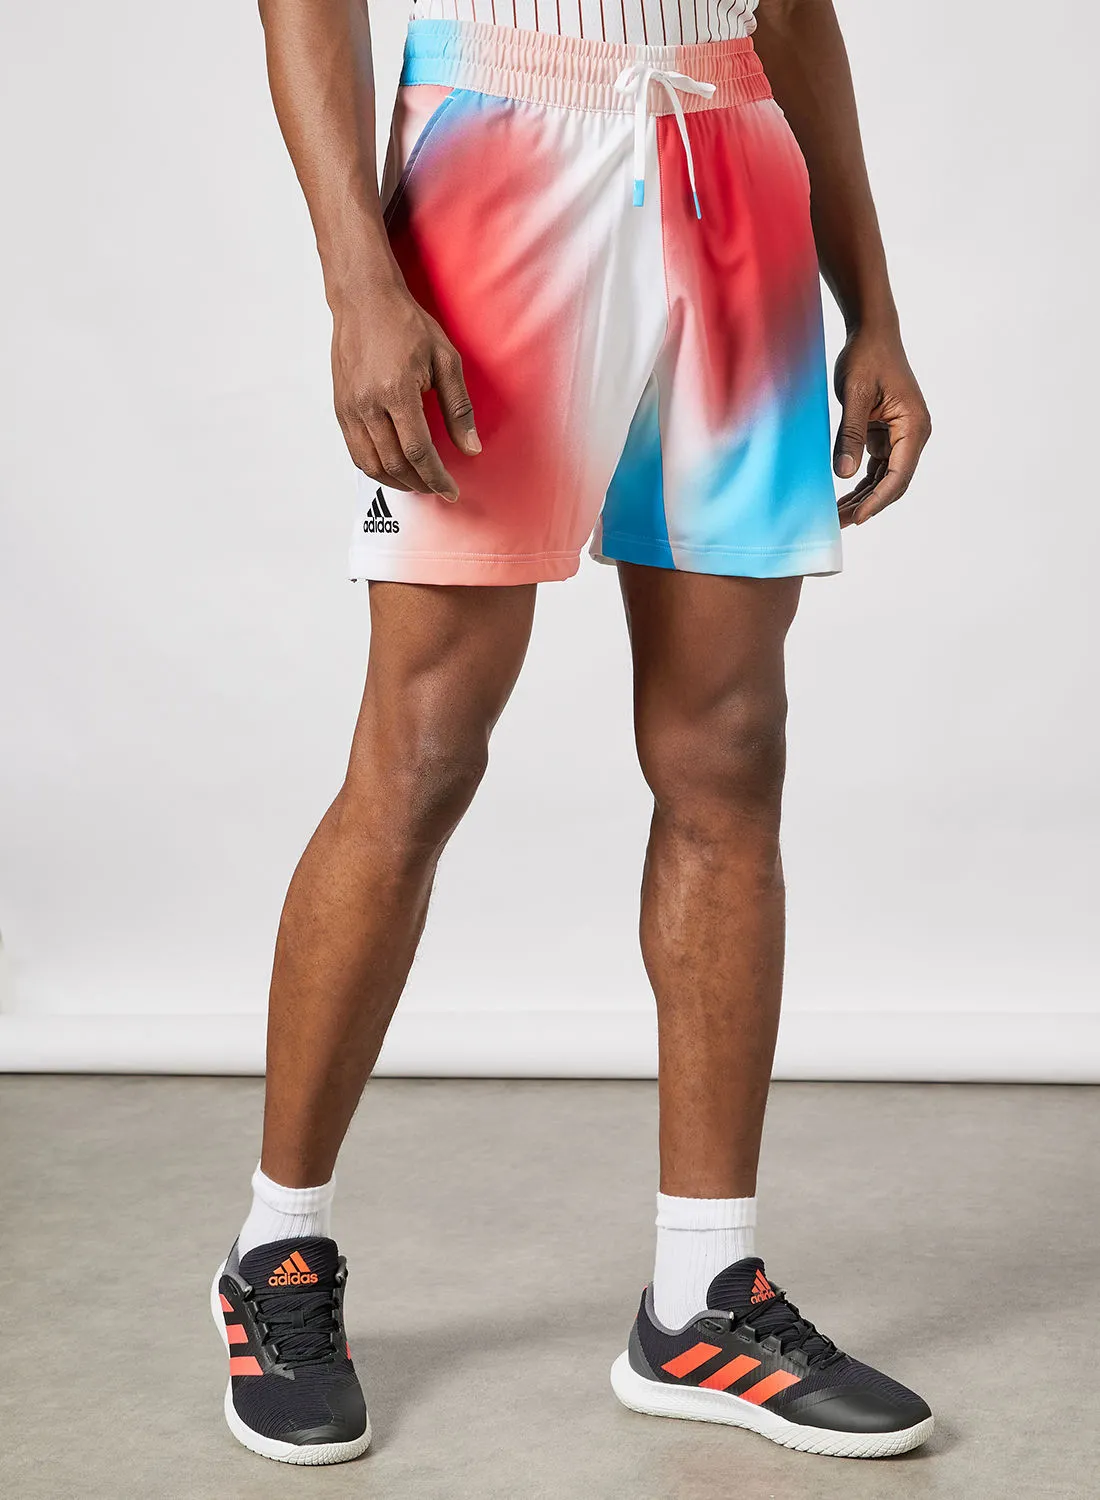 Adidas Melbourne Tennis Ergo Printed Shorts